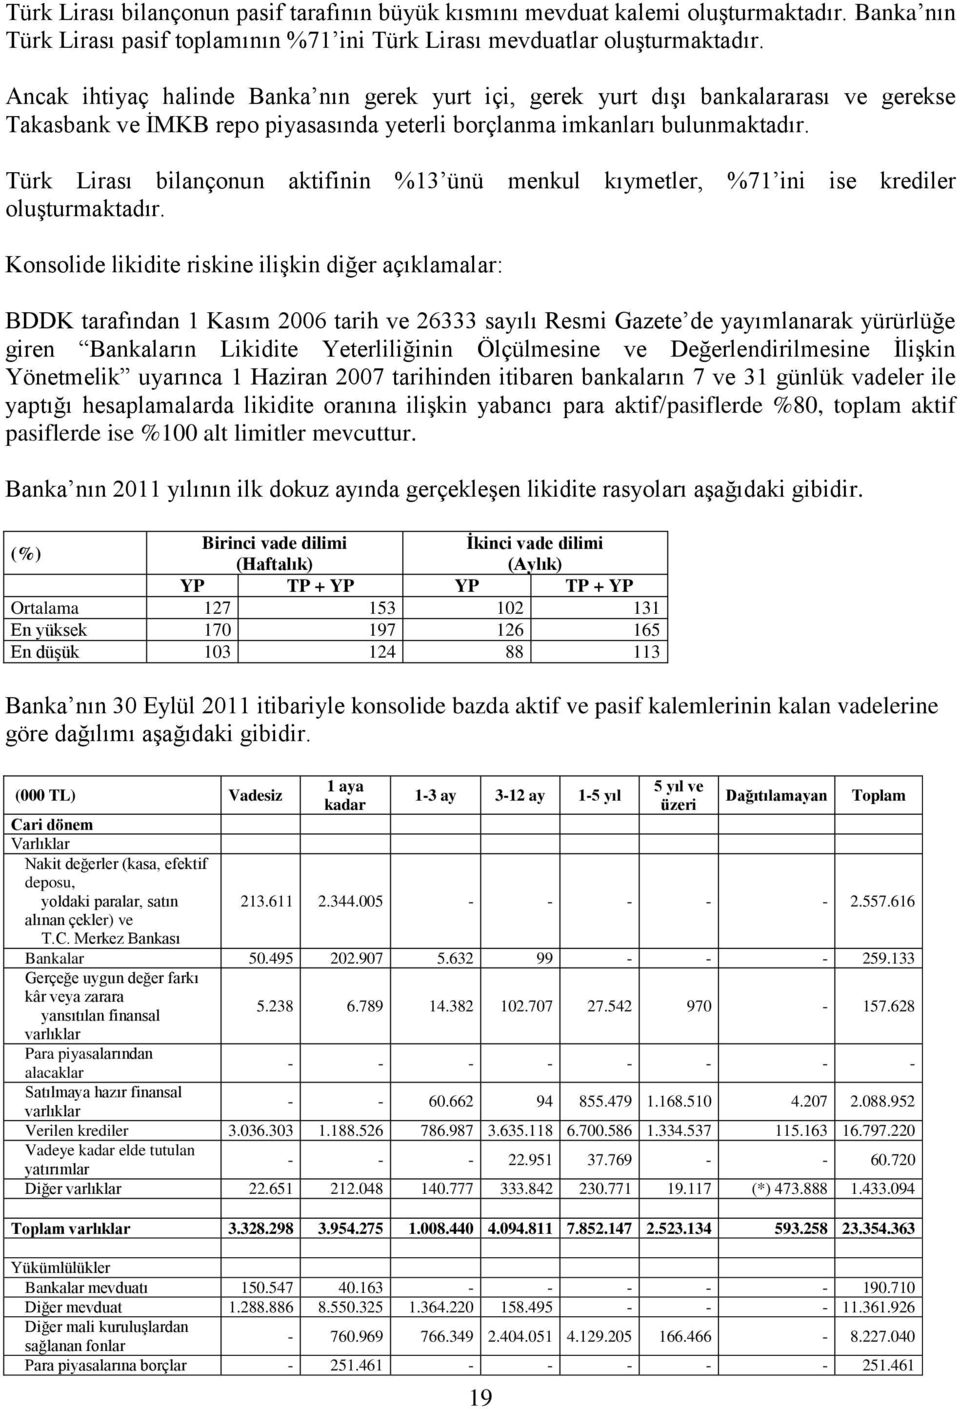 Türk Lirası bilançonun aktifinin %13 ünü menkul kıymetler, %71 ini ise krediler oluģturmaktadır.